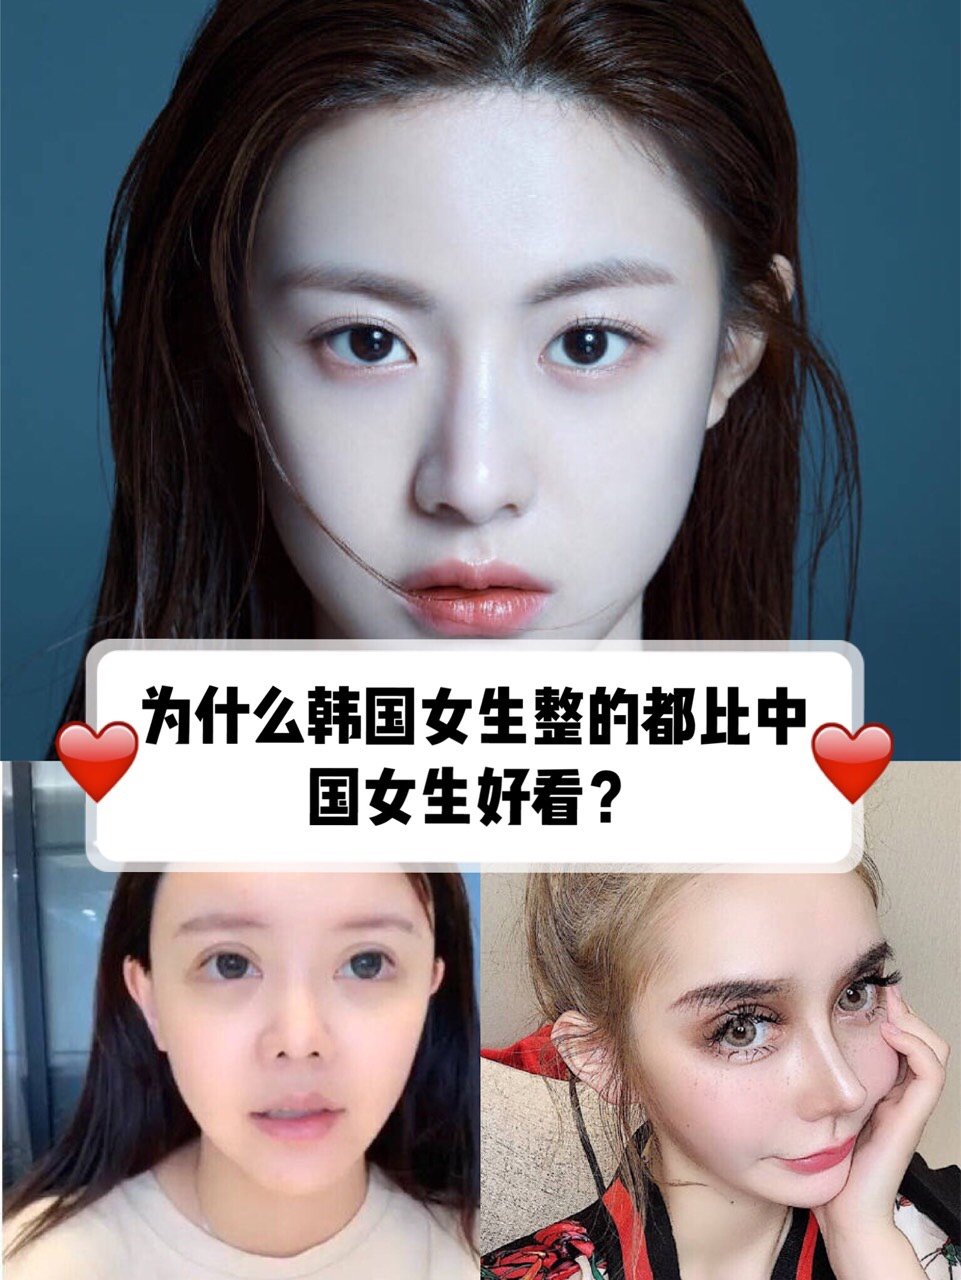 为什么韩国女生整的都比中国女生好看 首先还是审美 圈子 新氧美容整形